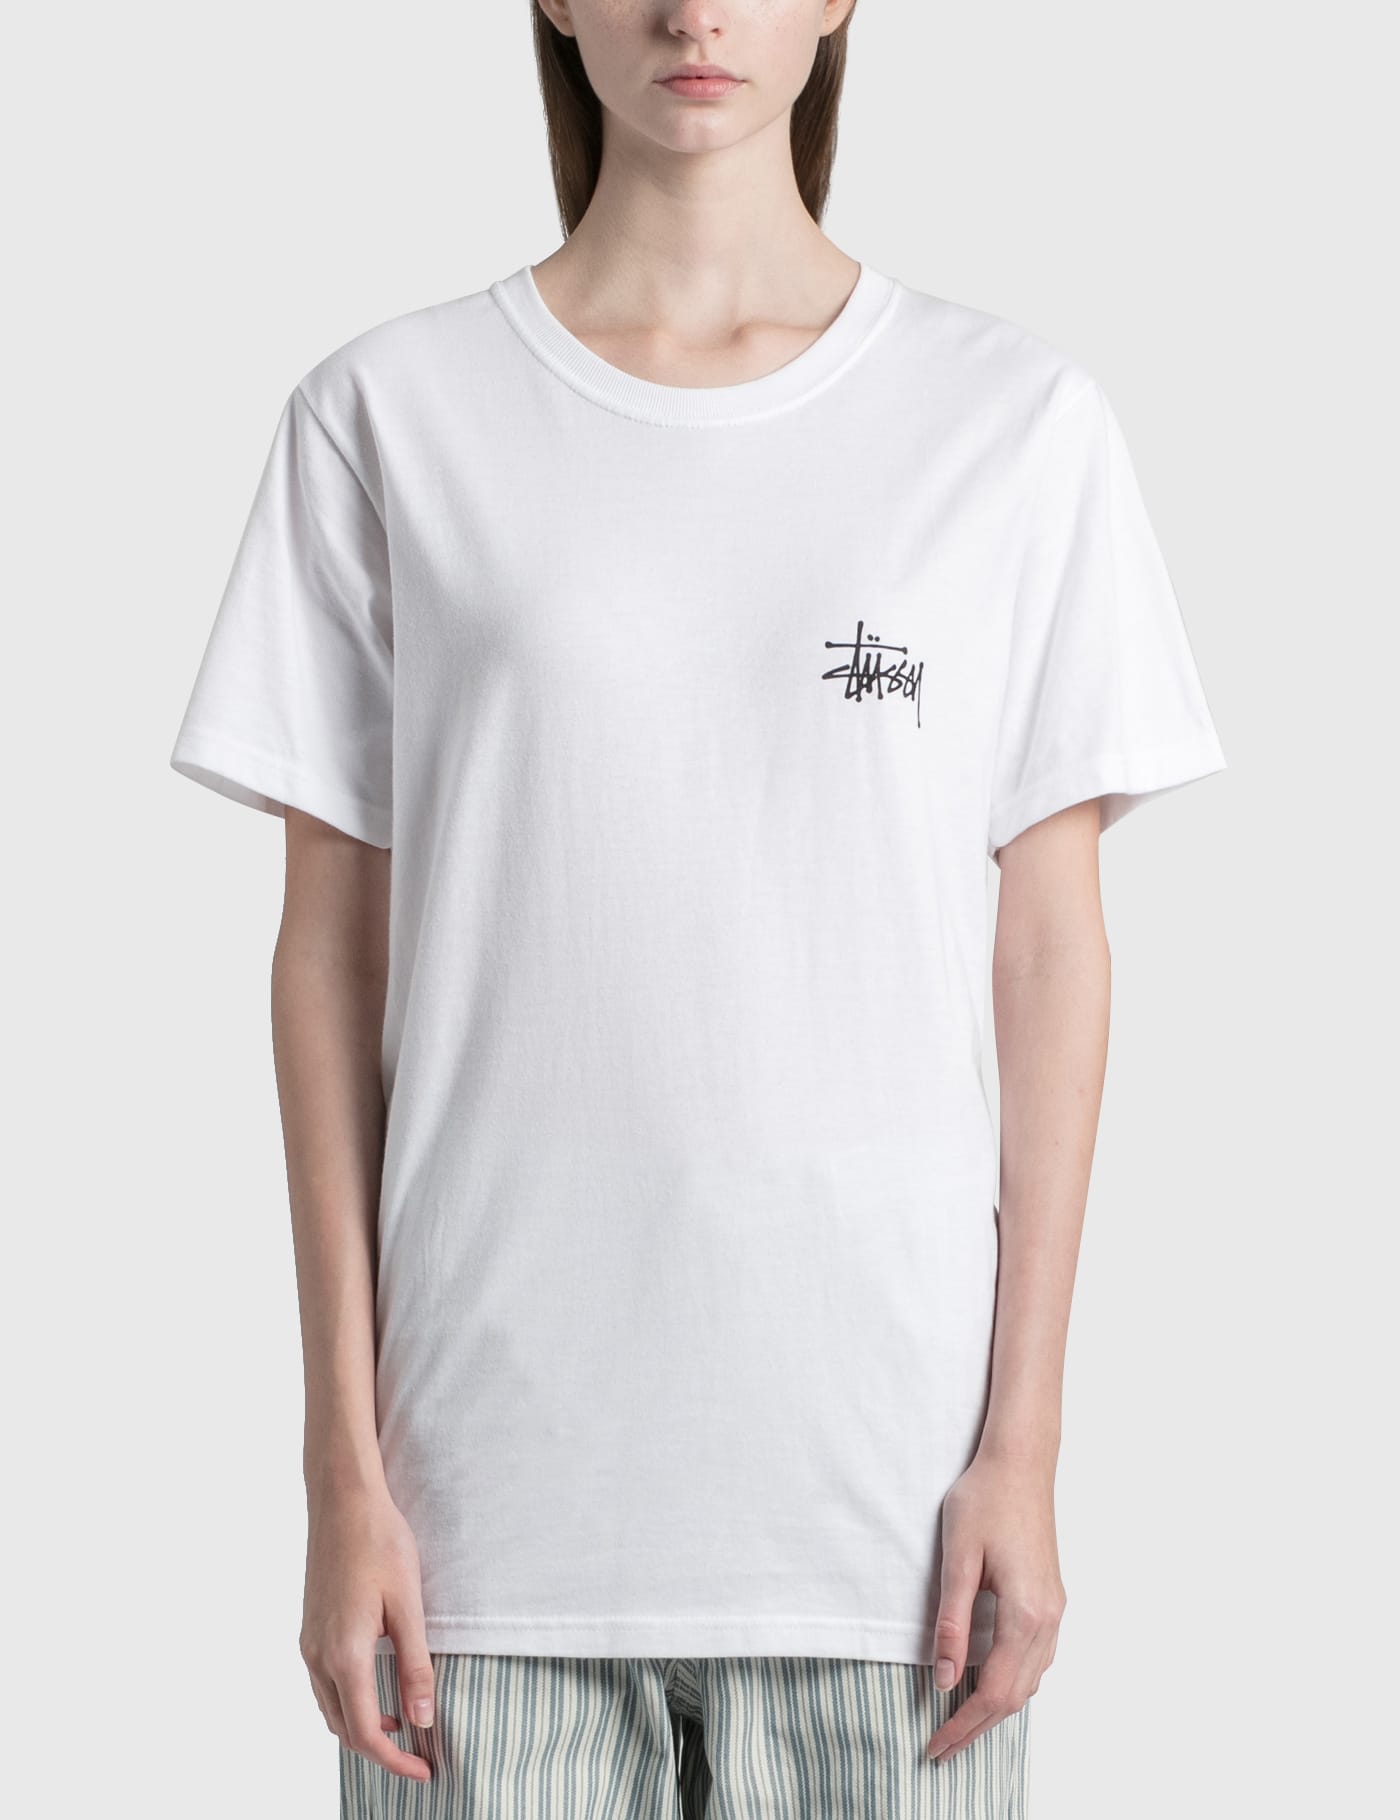 Stüssy - Basic Stussy T-Shirt | HBX - ハイプビースト(Hypebeast)が ...